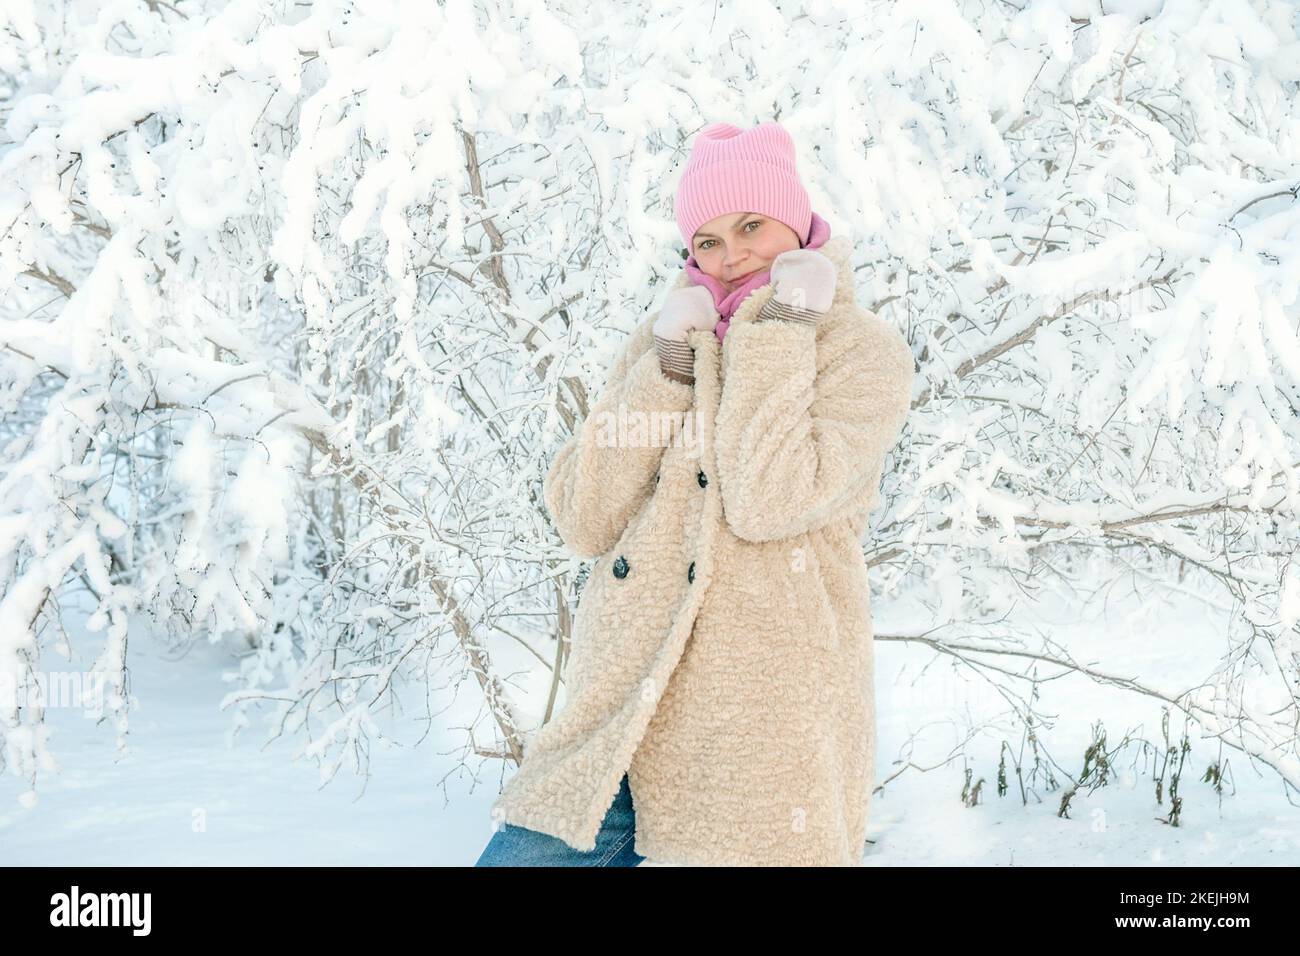 Junge Frau auf dem Hintergrund einer schönen Pflanze im Schnee. Eine junge Dame berührt bei einem Schneefall einen Ast im Schnee. Tolle Stimmung, Freude, Spaß. Stockfoto